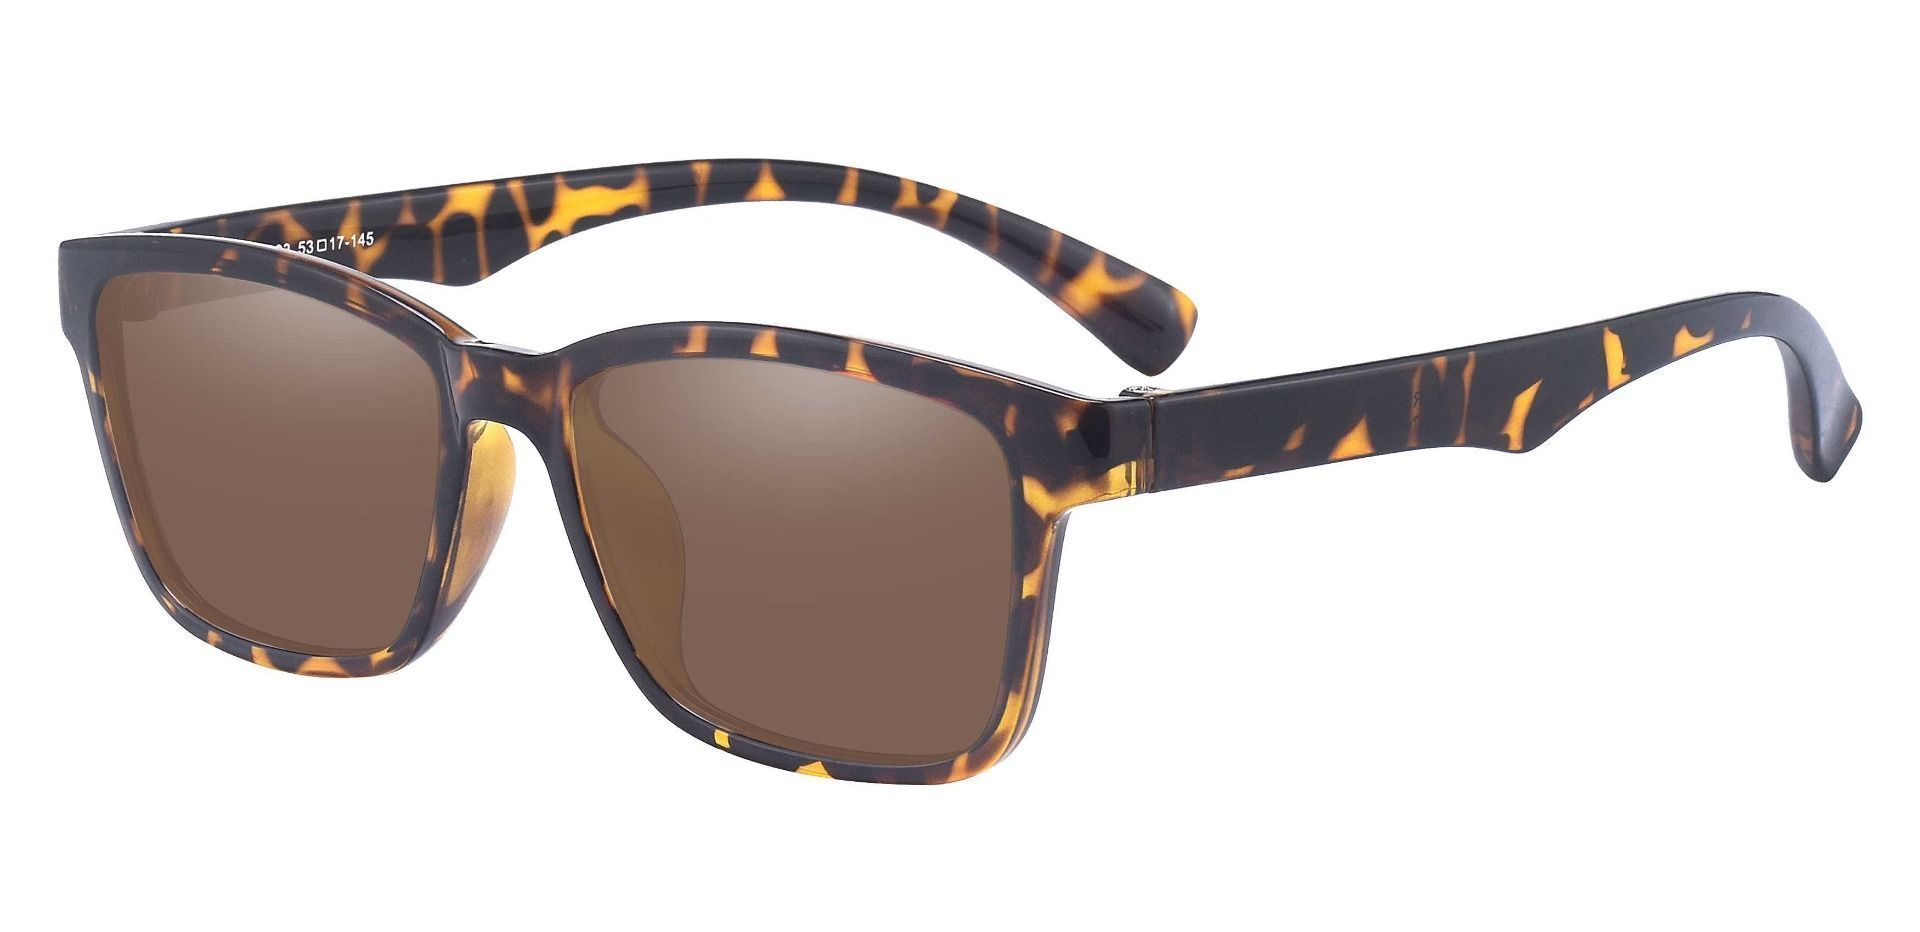 Hoover Rectangle Prescription Sunglasses - Tortoise Frame With Brown Lenses